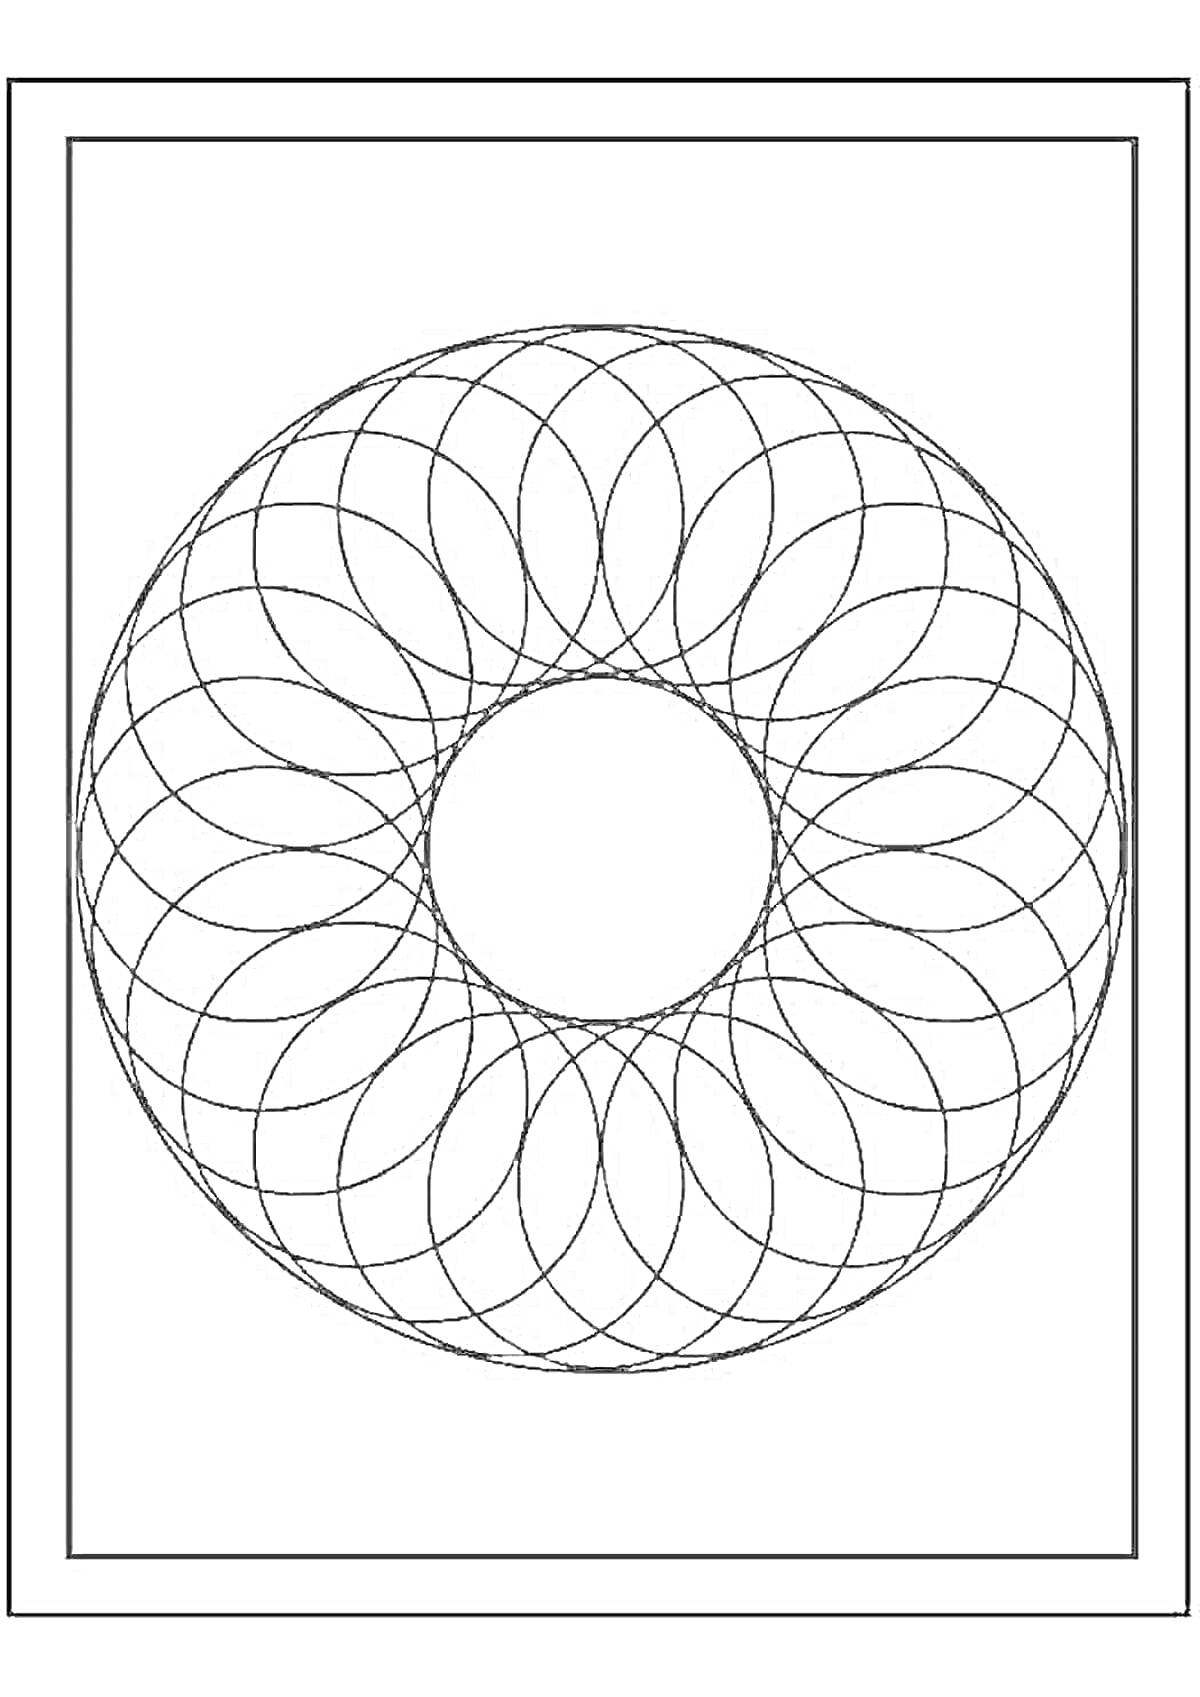 Раскраска круговая спираль с пересекающимися дугами в рамке